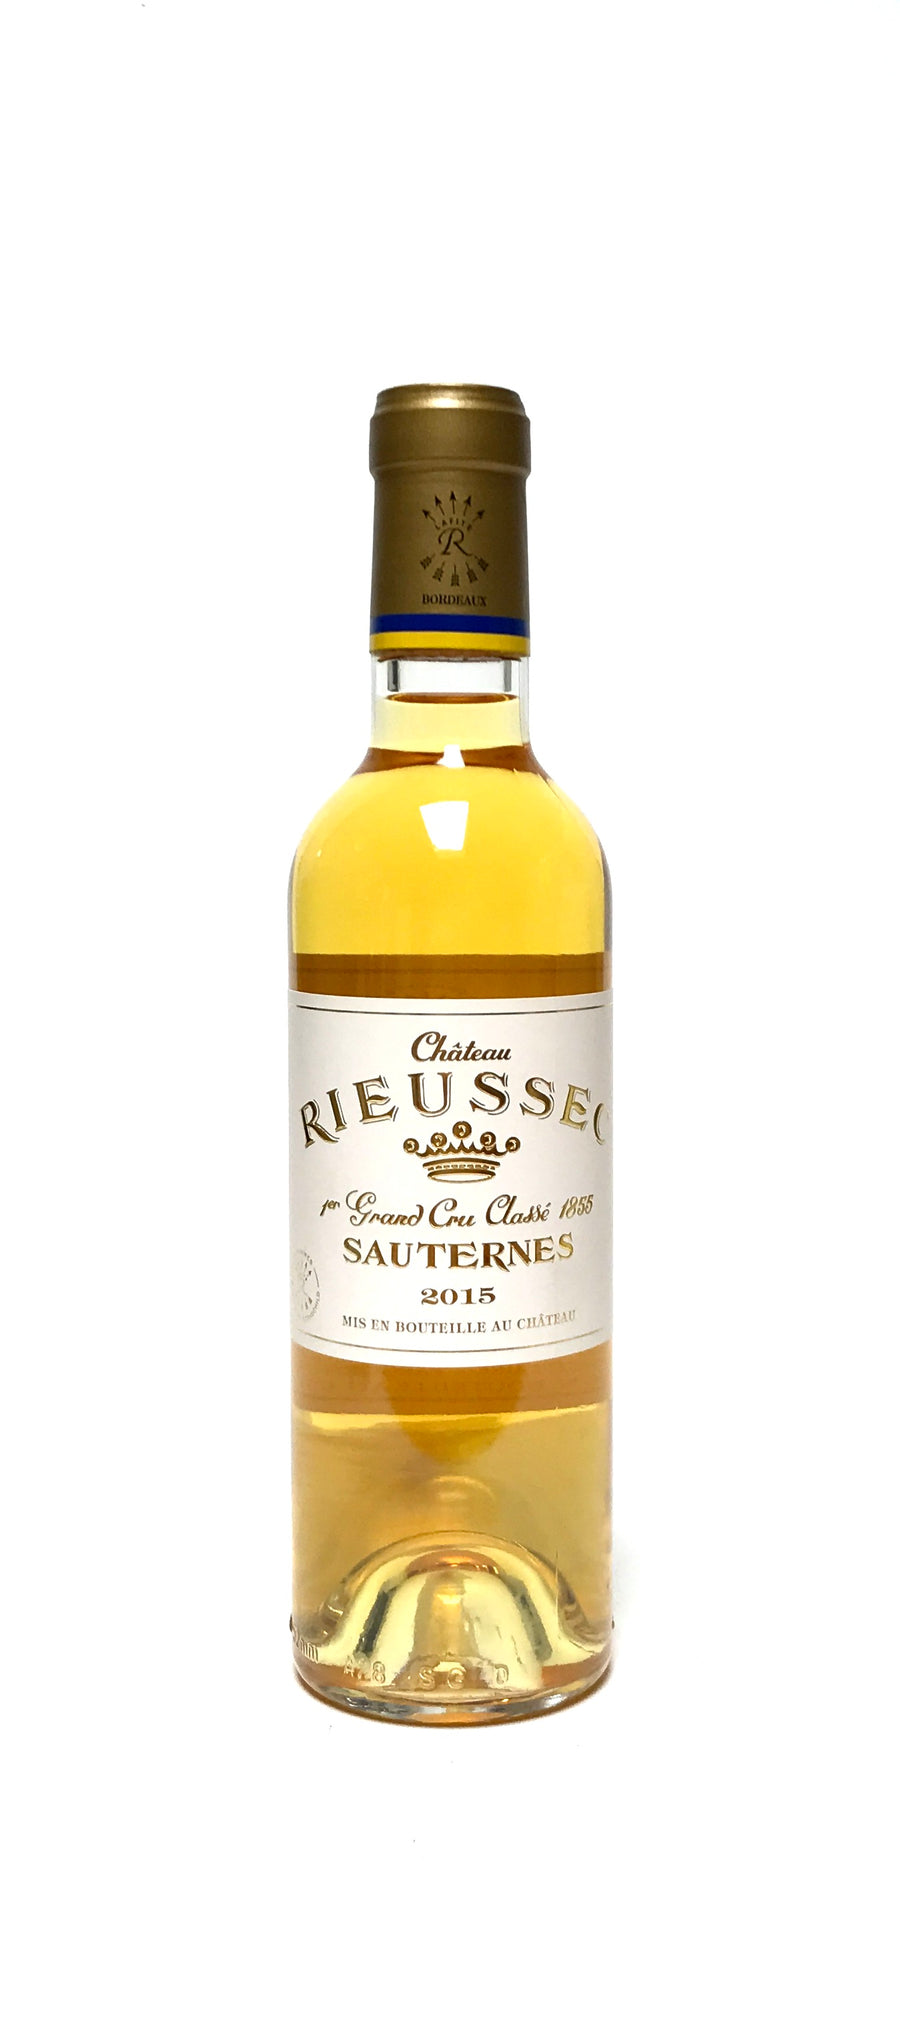 Rieussec 2015 Sauternes 375ml (half-bottle)